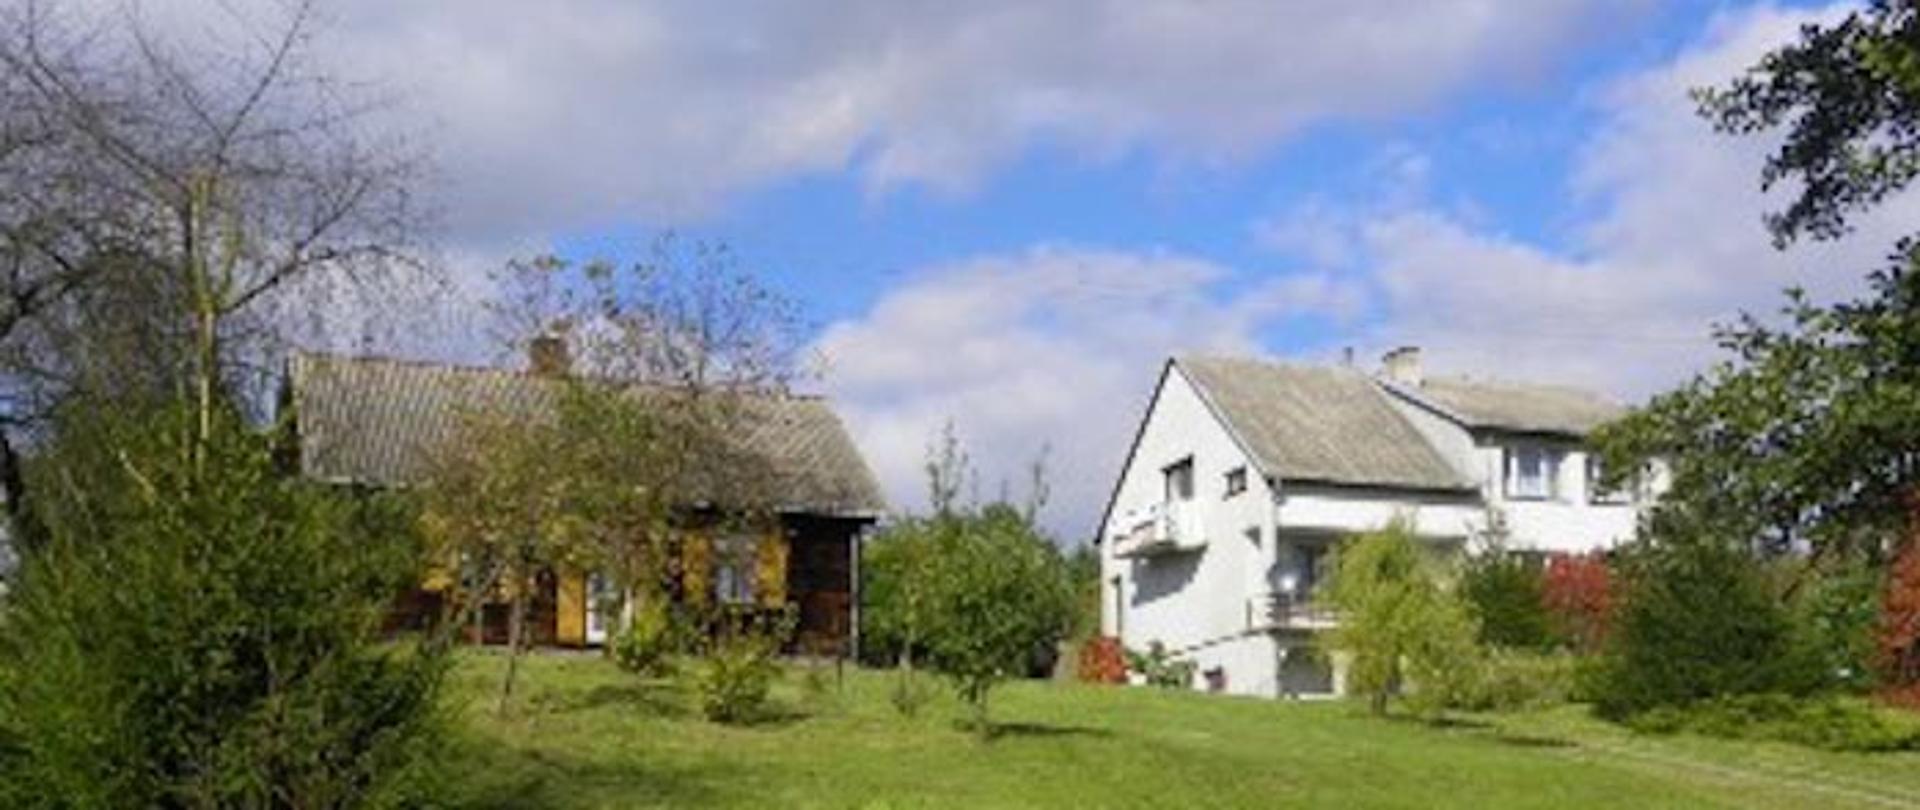 Widok na gospodarstwo agroturystyczne Joanny i Wojciecha Rykaczewskich położone na wzniesieniu.